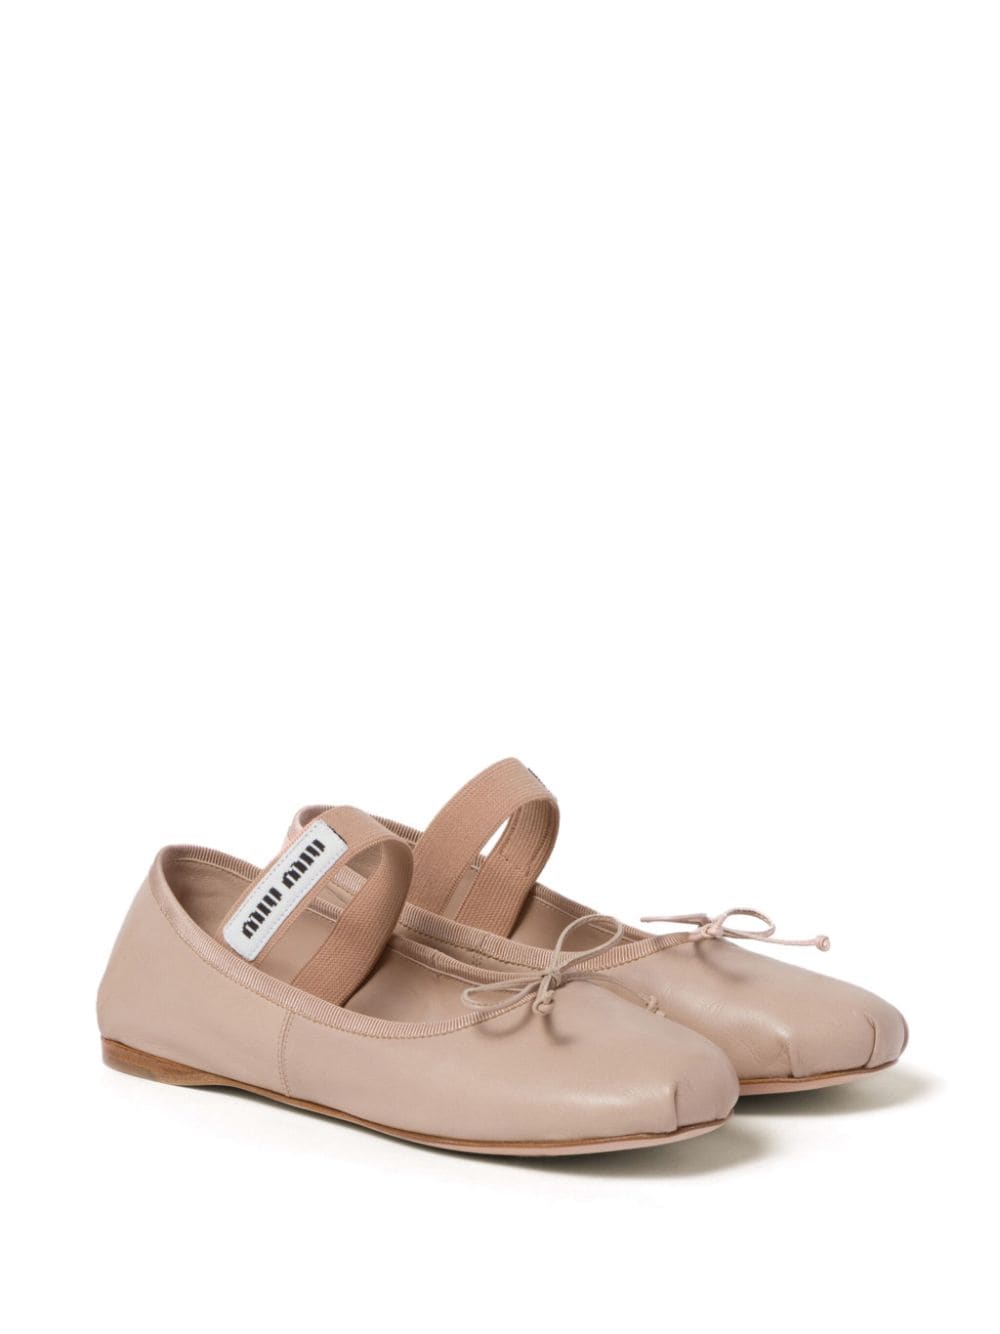 Miu Miu leather ballerina shoes - Roze